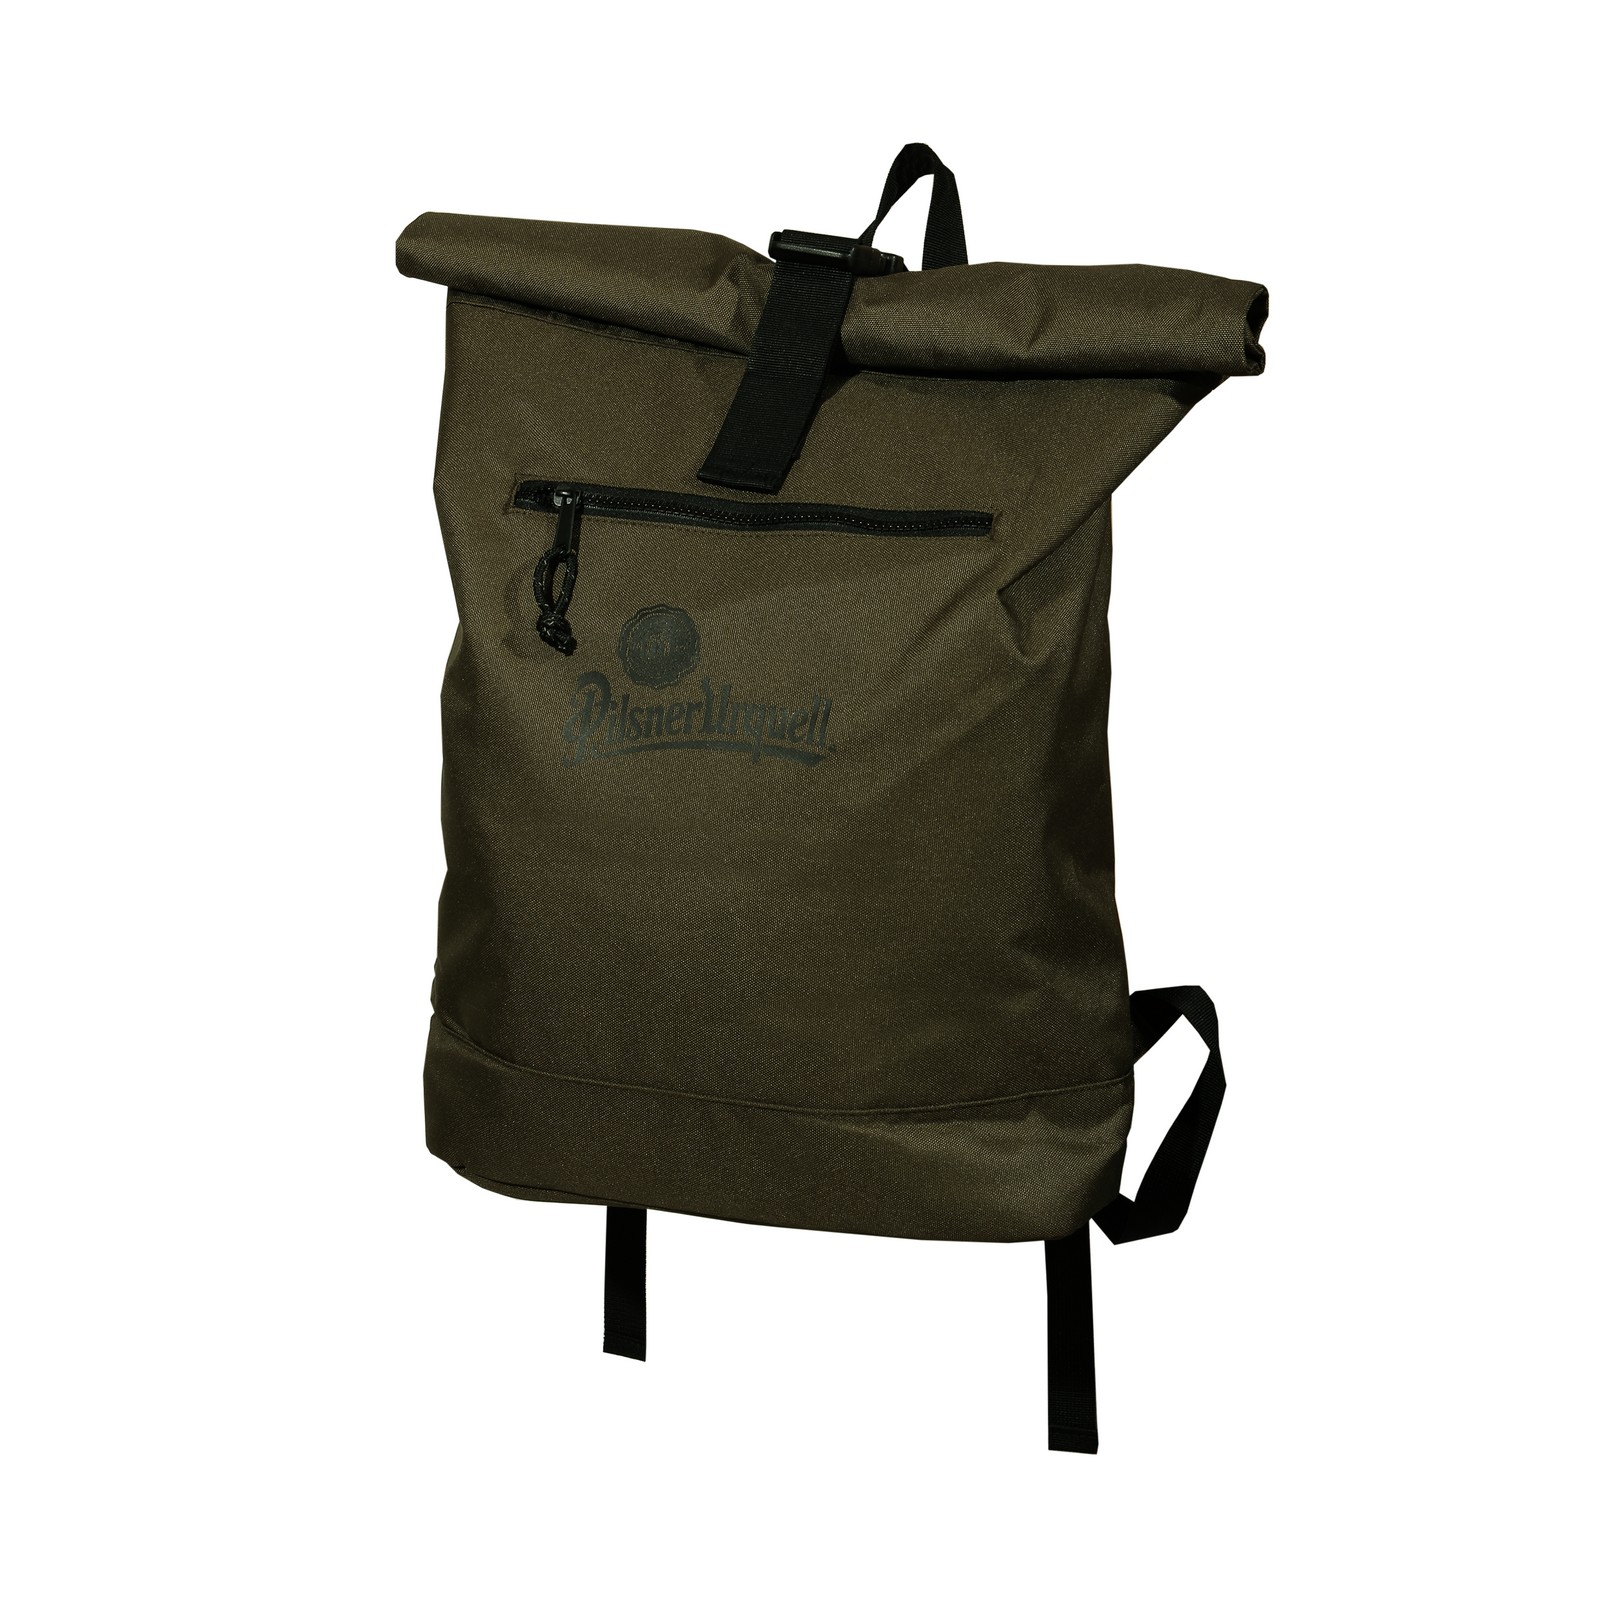 Backpack Pilsner Urquell